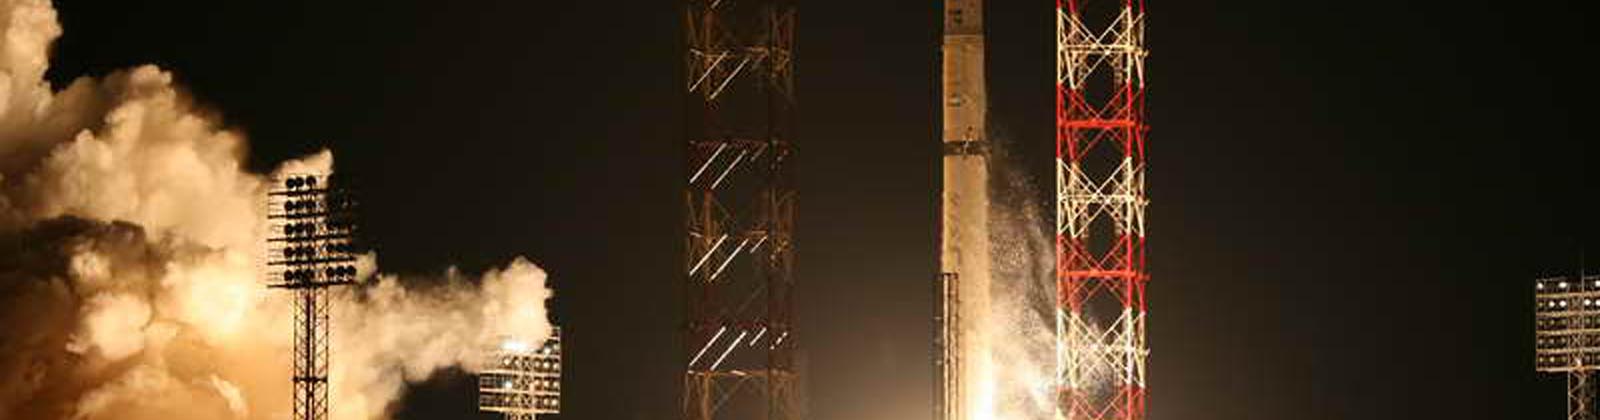 Lancement du satellite Measat 3a par une fusée Zenit